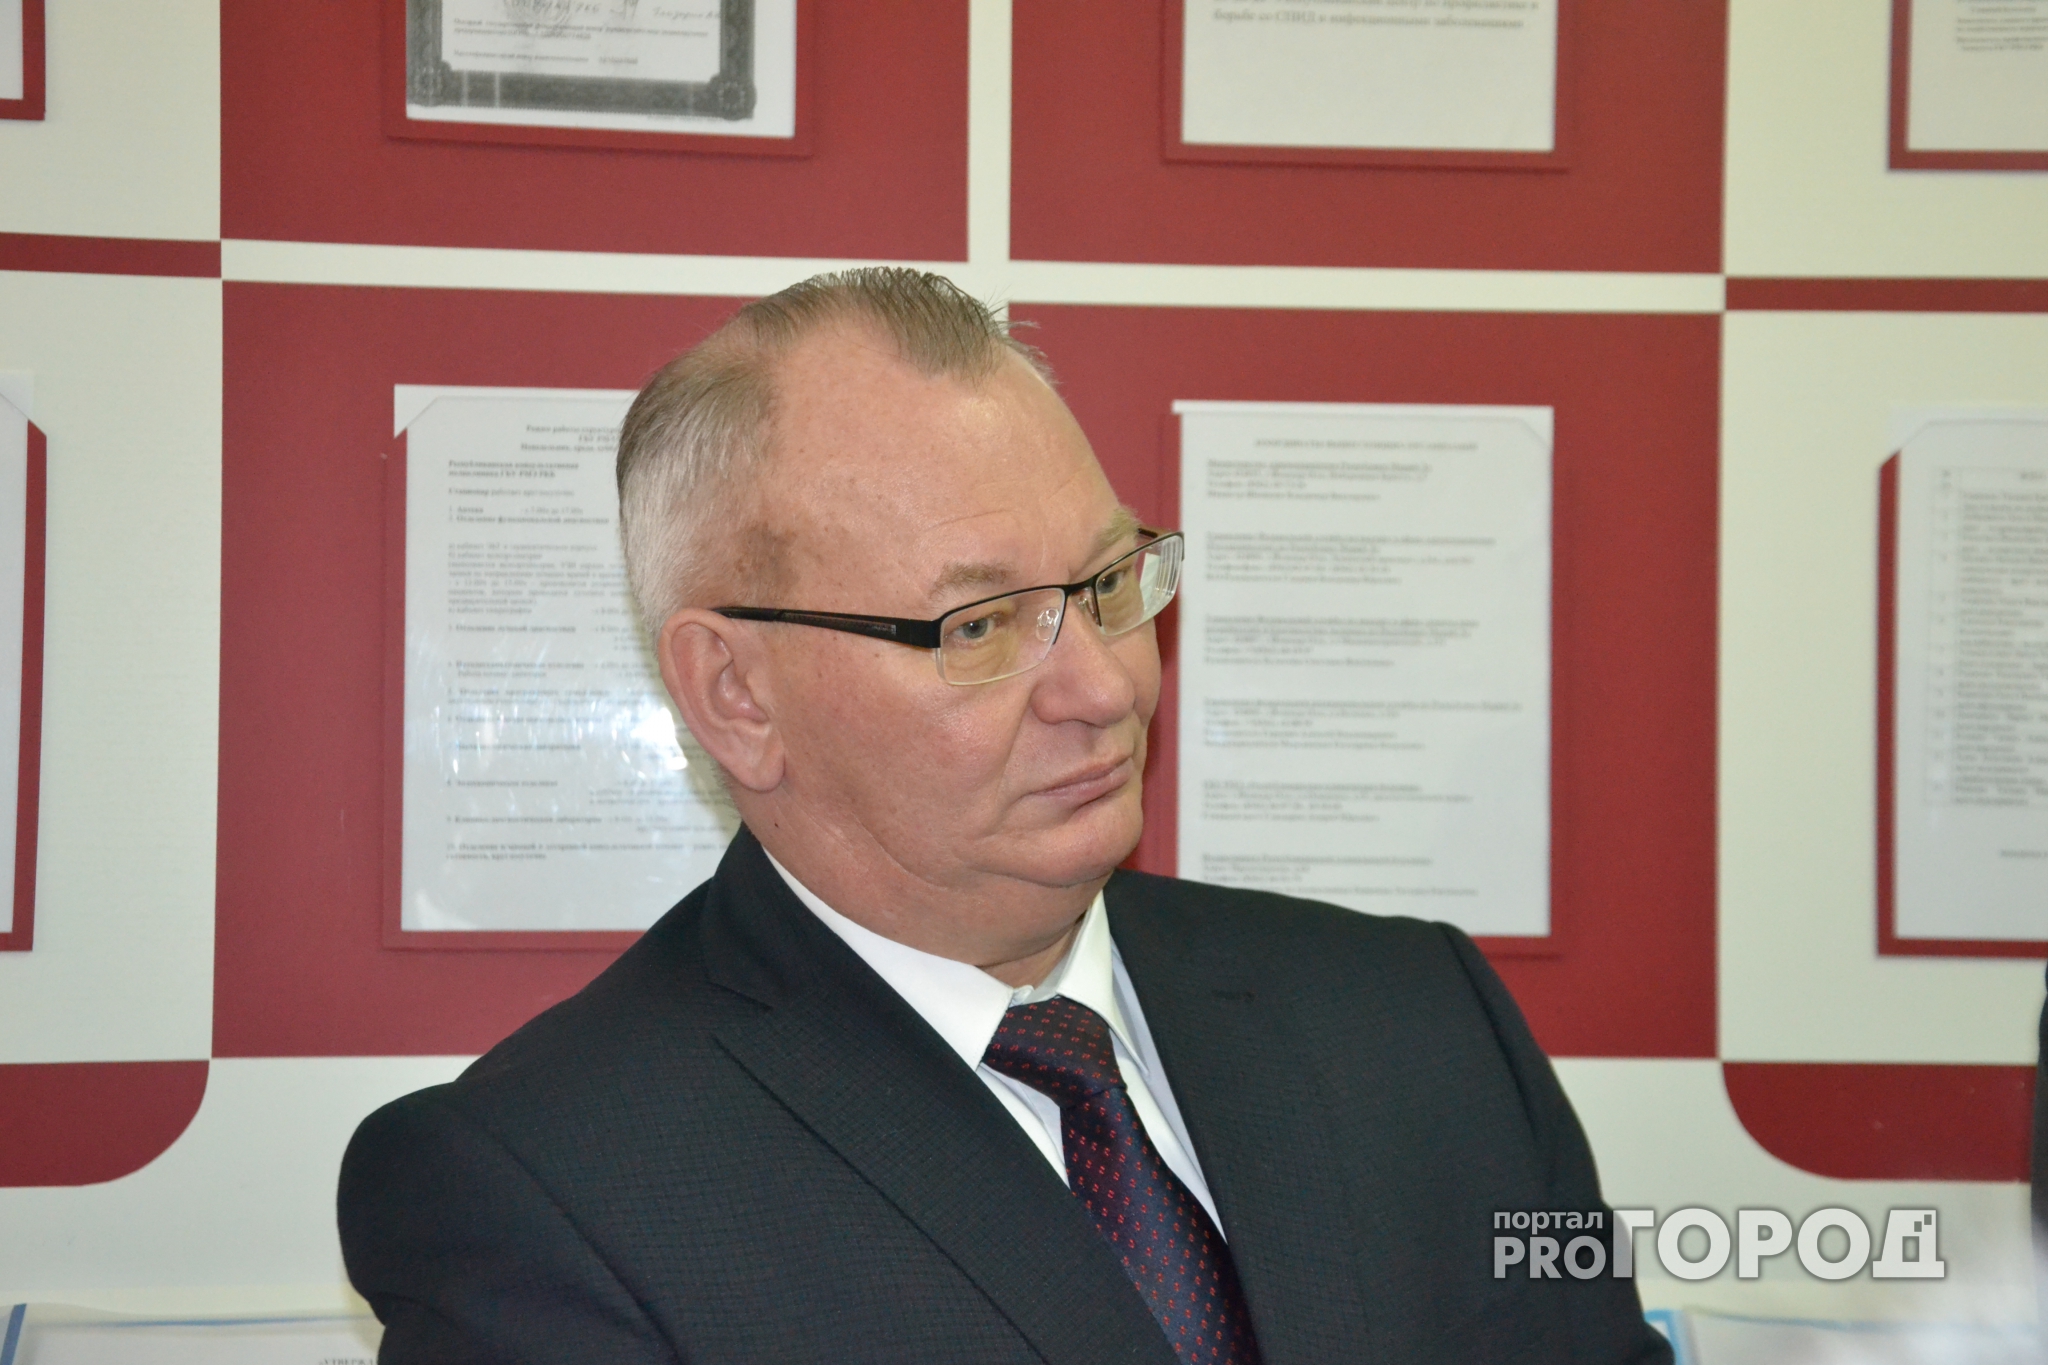 Вице-премьер Владимир Шишкин снят с должности министра здравоохранения Марий Эл